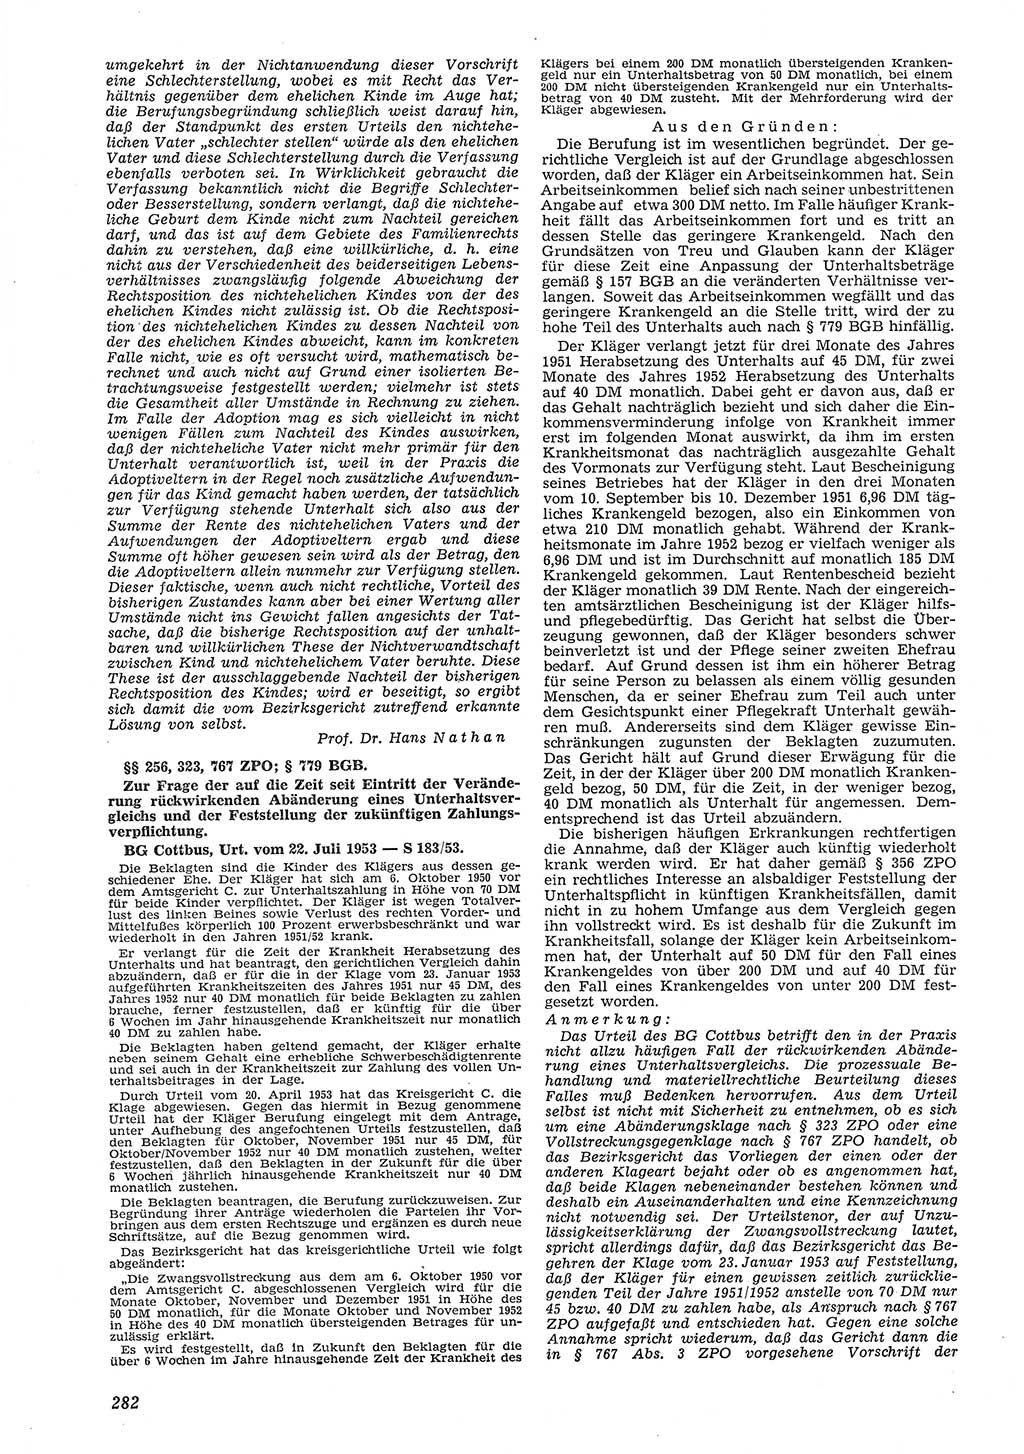 Neue Justiz (NJ), Zeitschrift für Recht und Rechtswissenschaft [Deutsche Demokratische Republik (DDR)], 8. Jahrgang 1954, Seite 282 (NJ DDR 1954, S. 282)